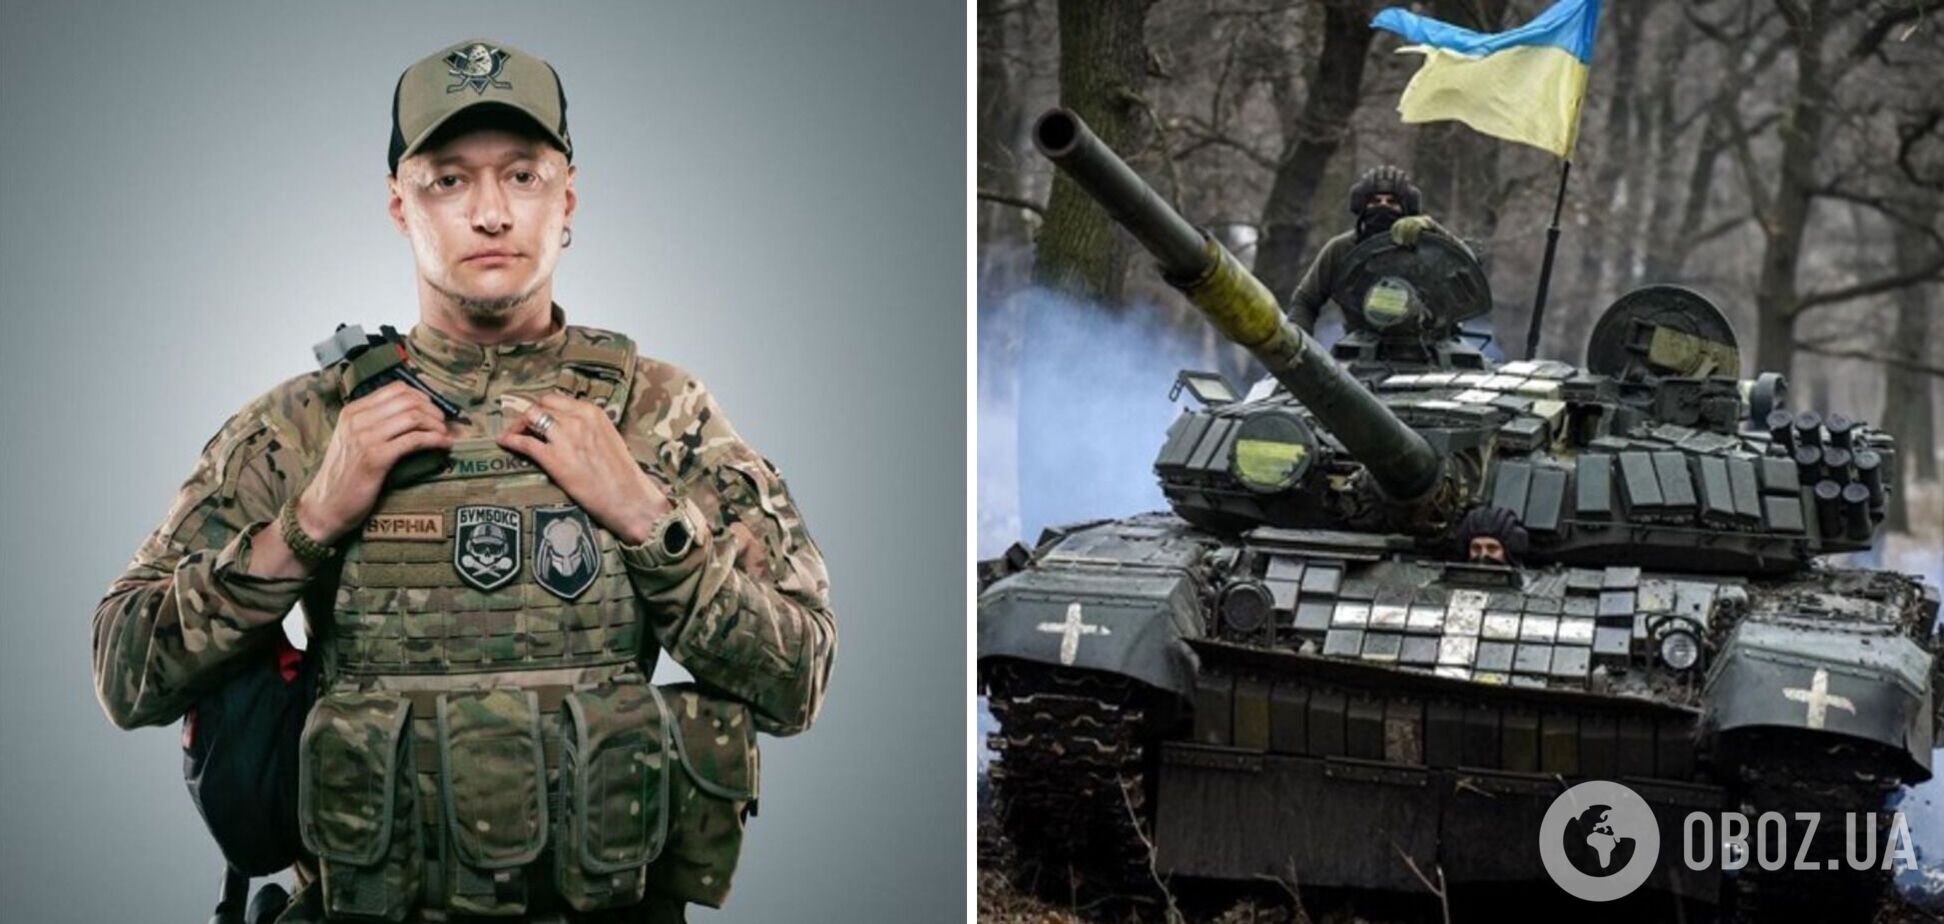 Музыкант-воин Андрей Хливнюк предположил, сколько еще продлится война в Украине: она только началась